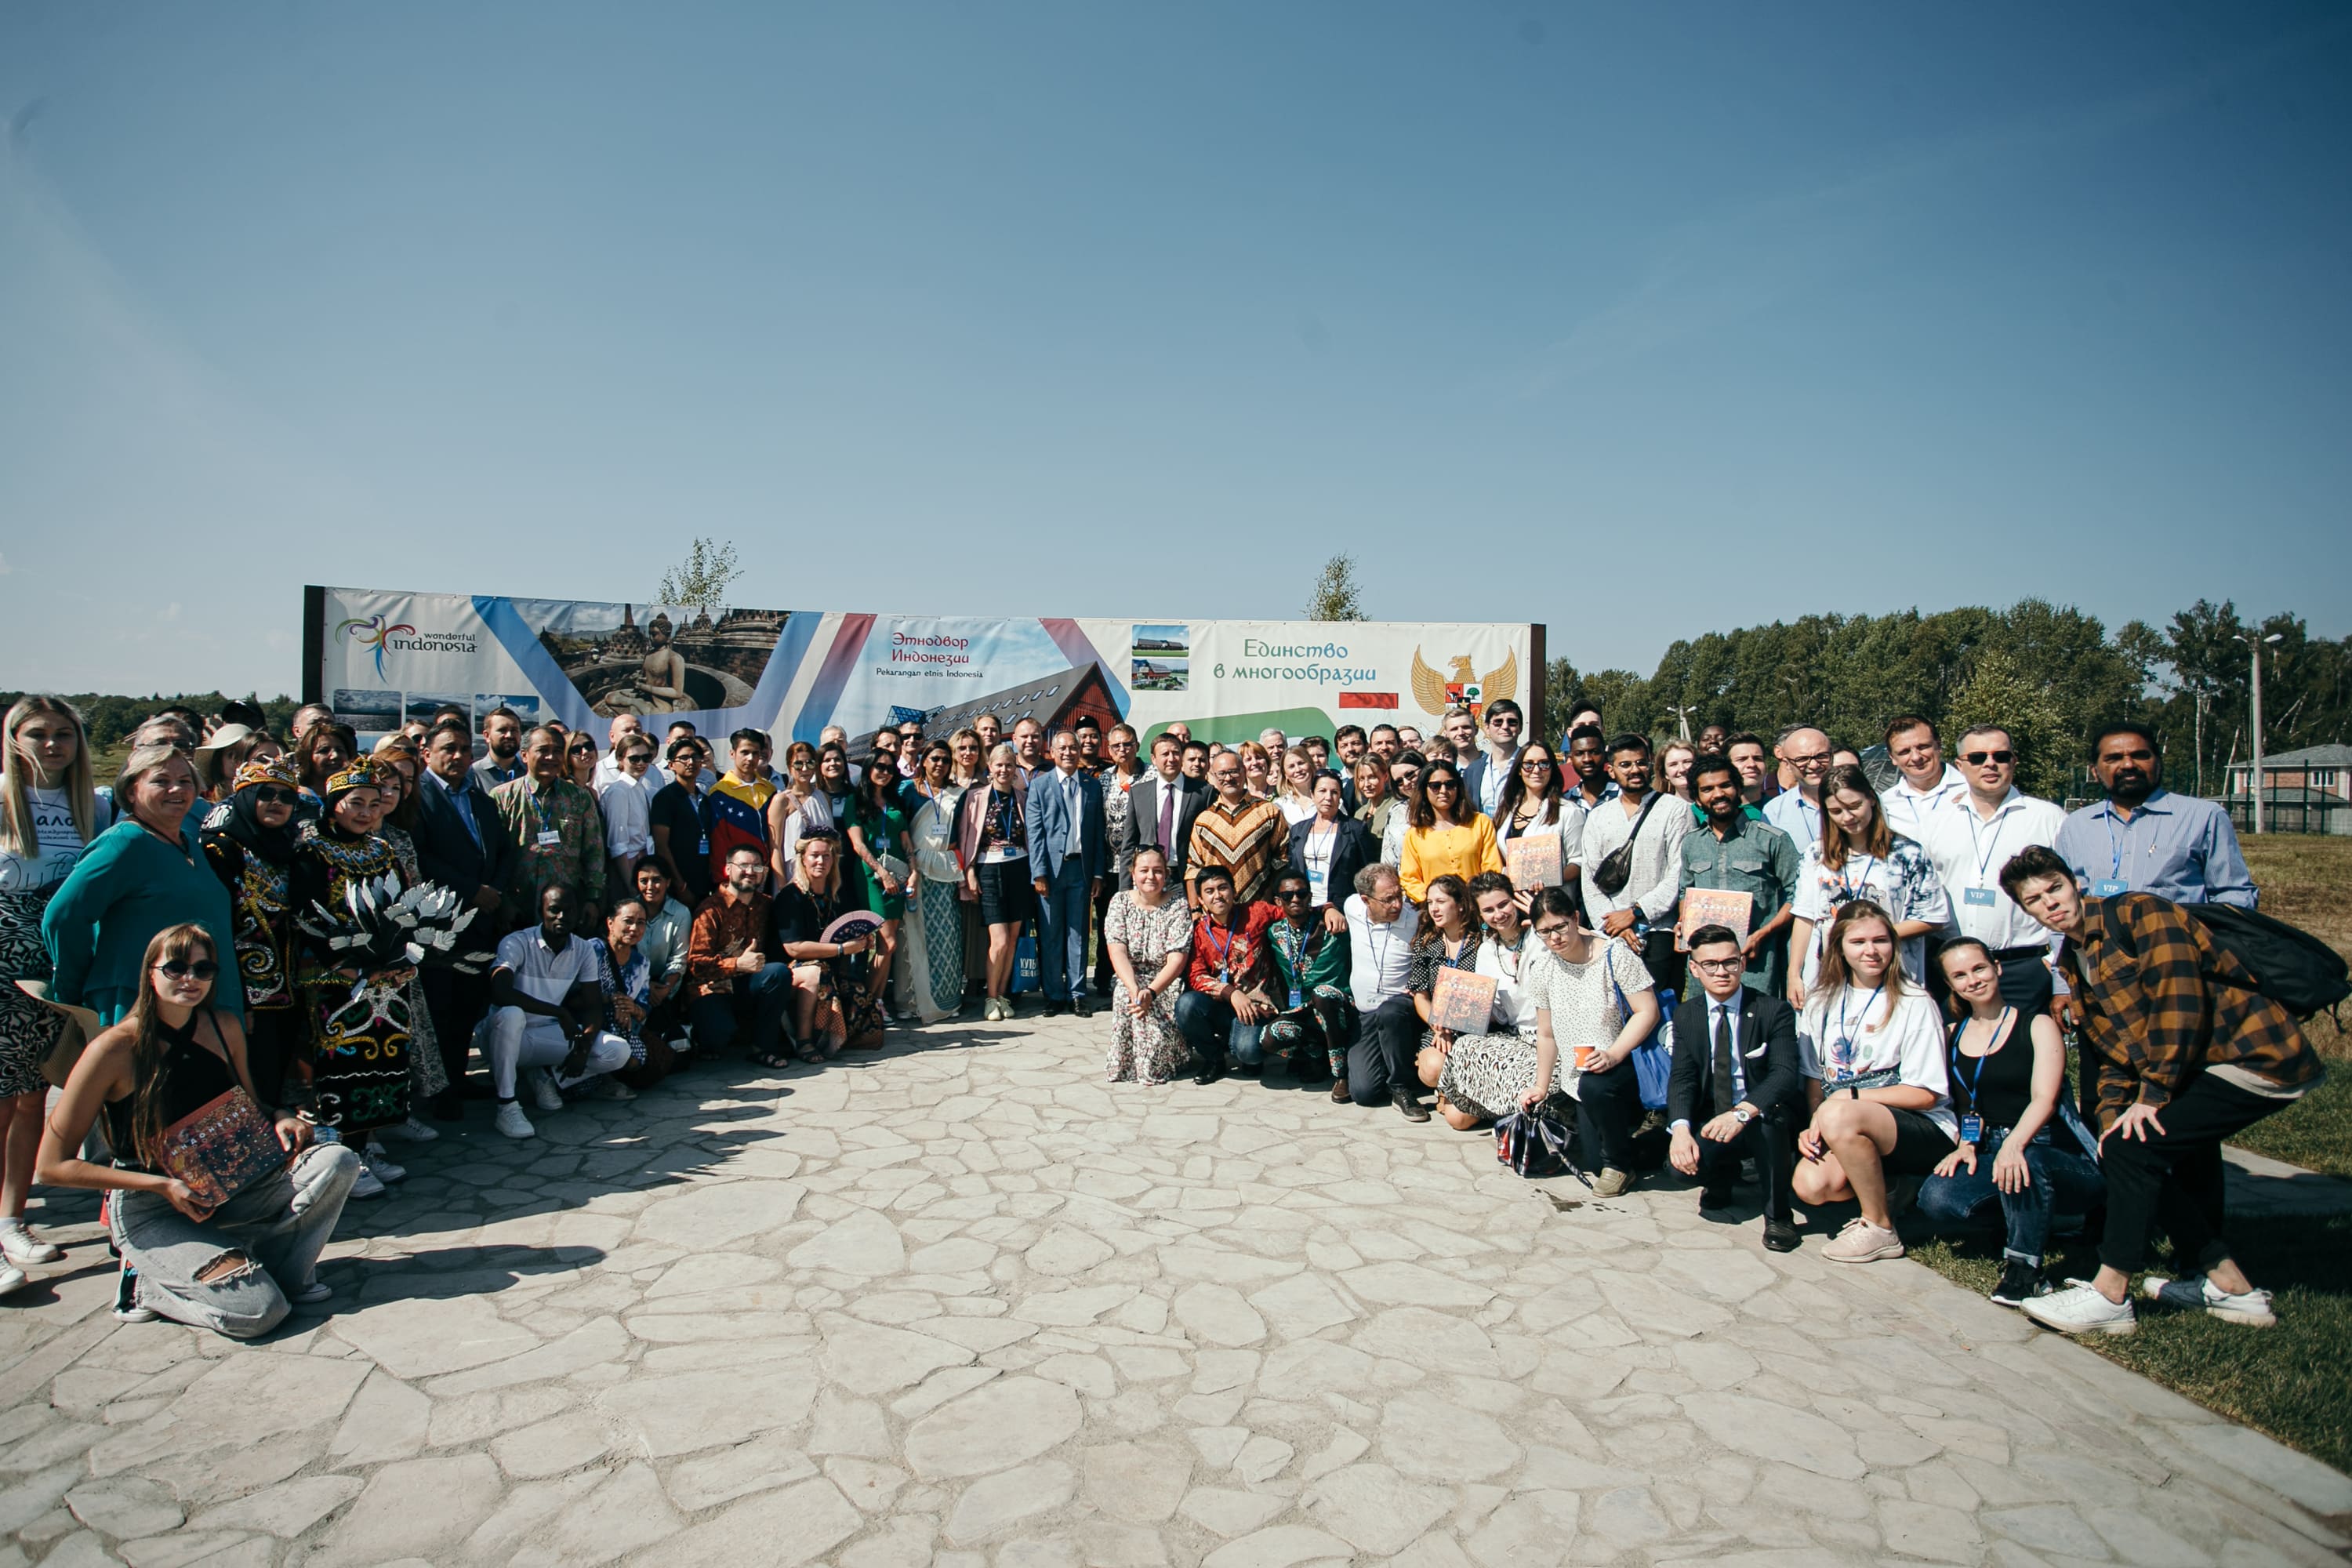 XIV Международный молодёжный лагерь "диалог". Camping dialogue